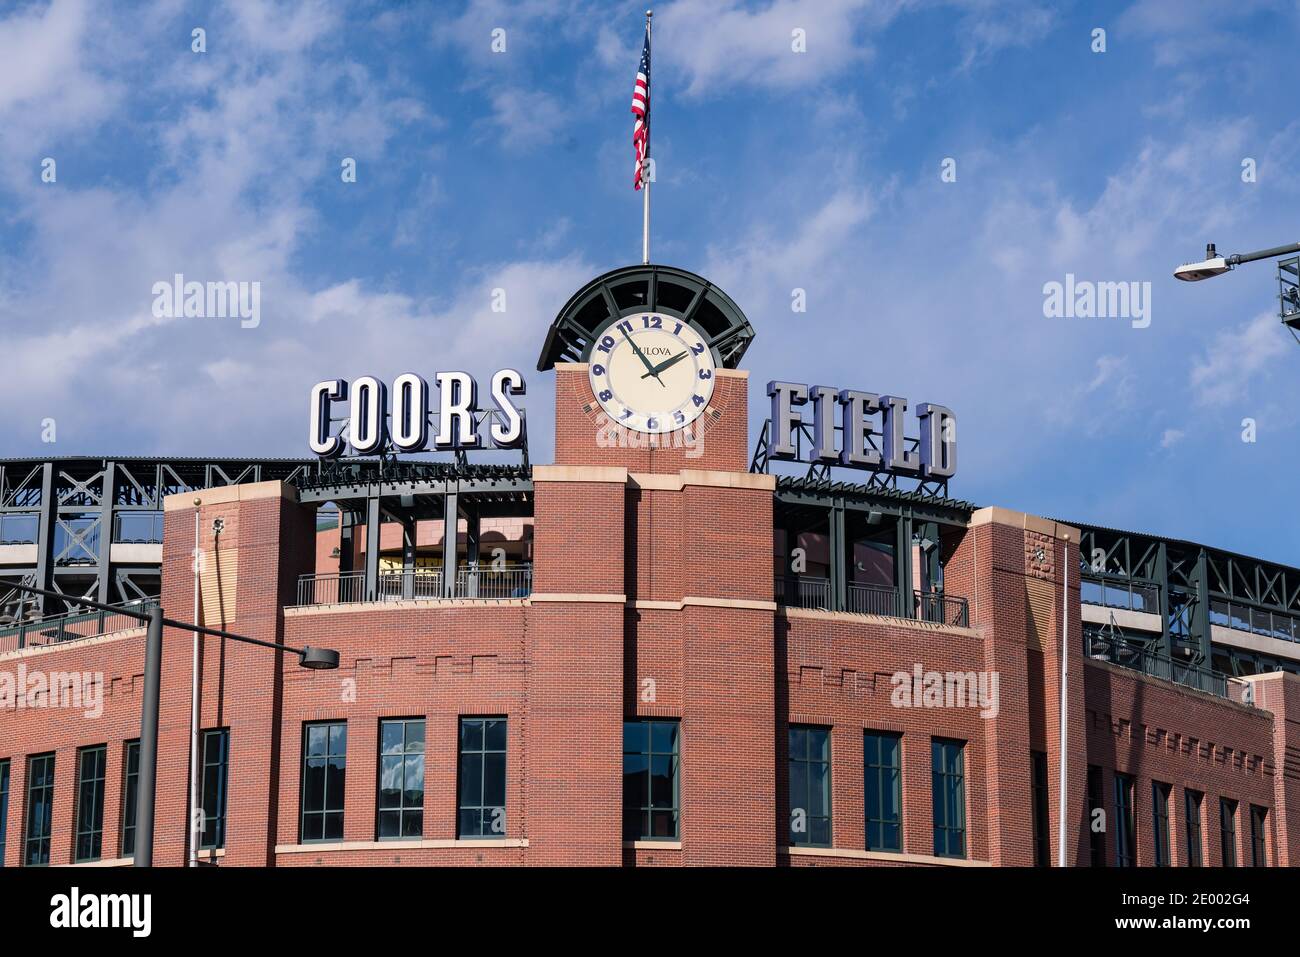 Denver, CO - 21 de noviembre de 2020: Exterior de Coors Field, sede del equipo de béisbol de la Colorado Rockies Major League Foto de stock